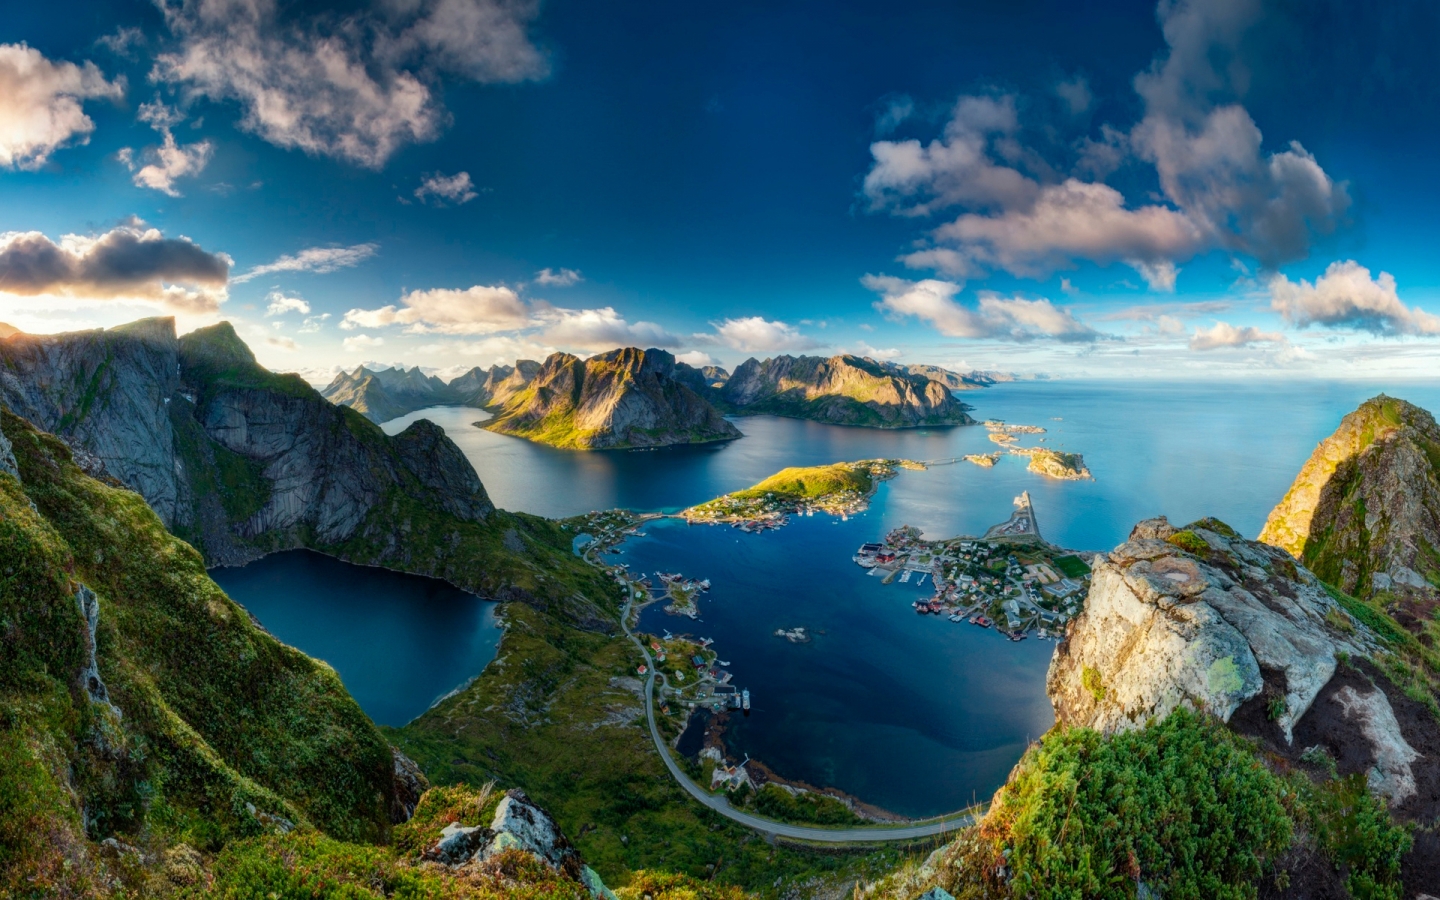 Reinebringen Norway for 1440 x 900 widescreen resolution